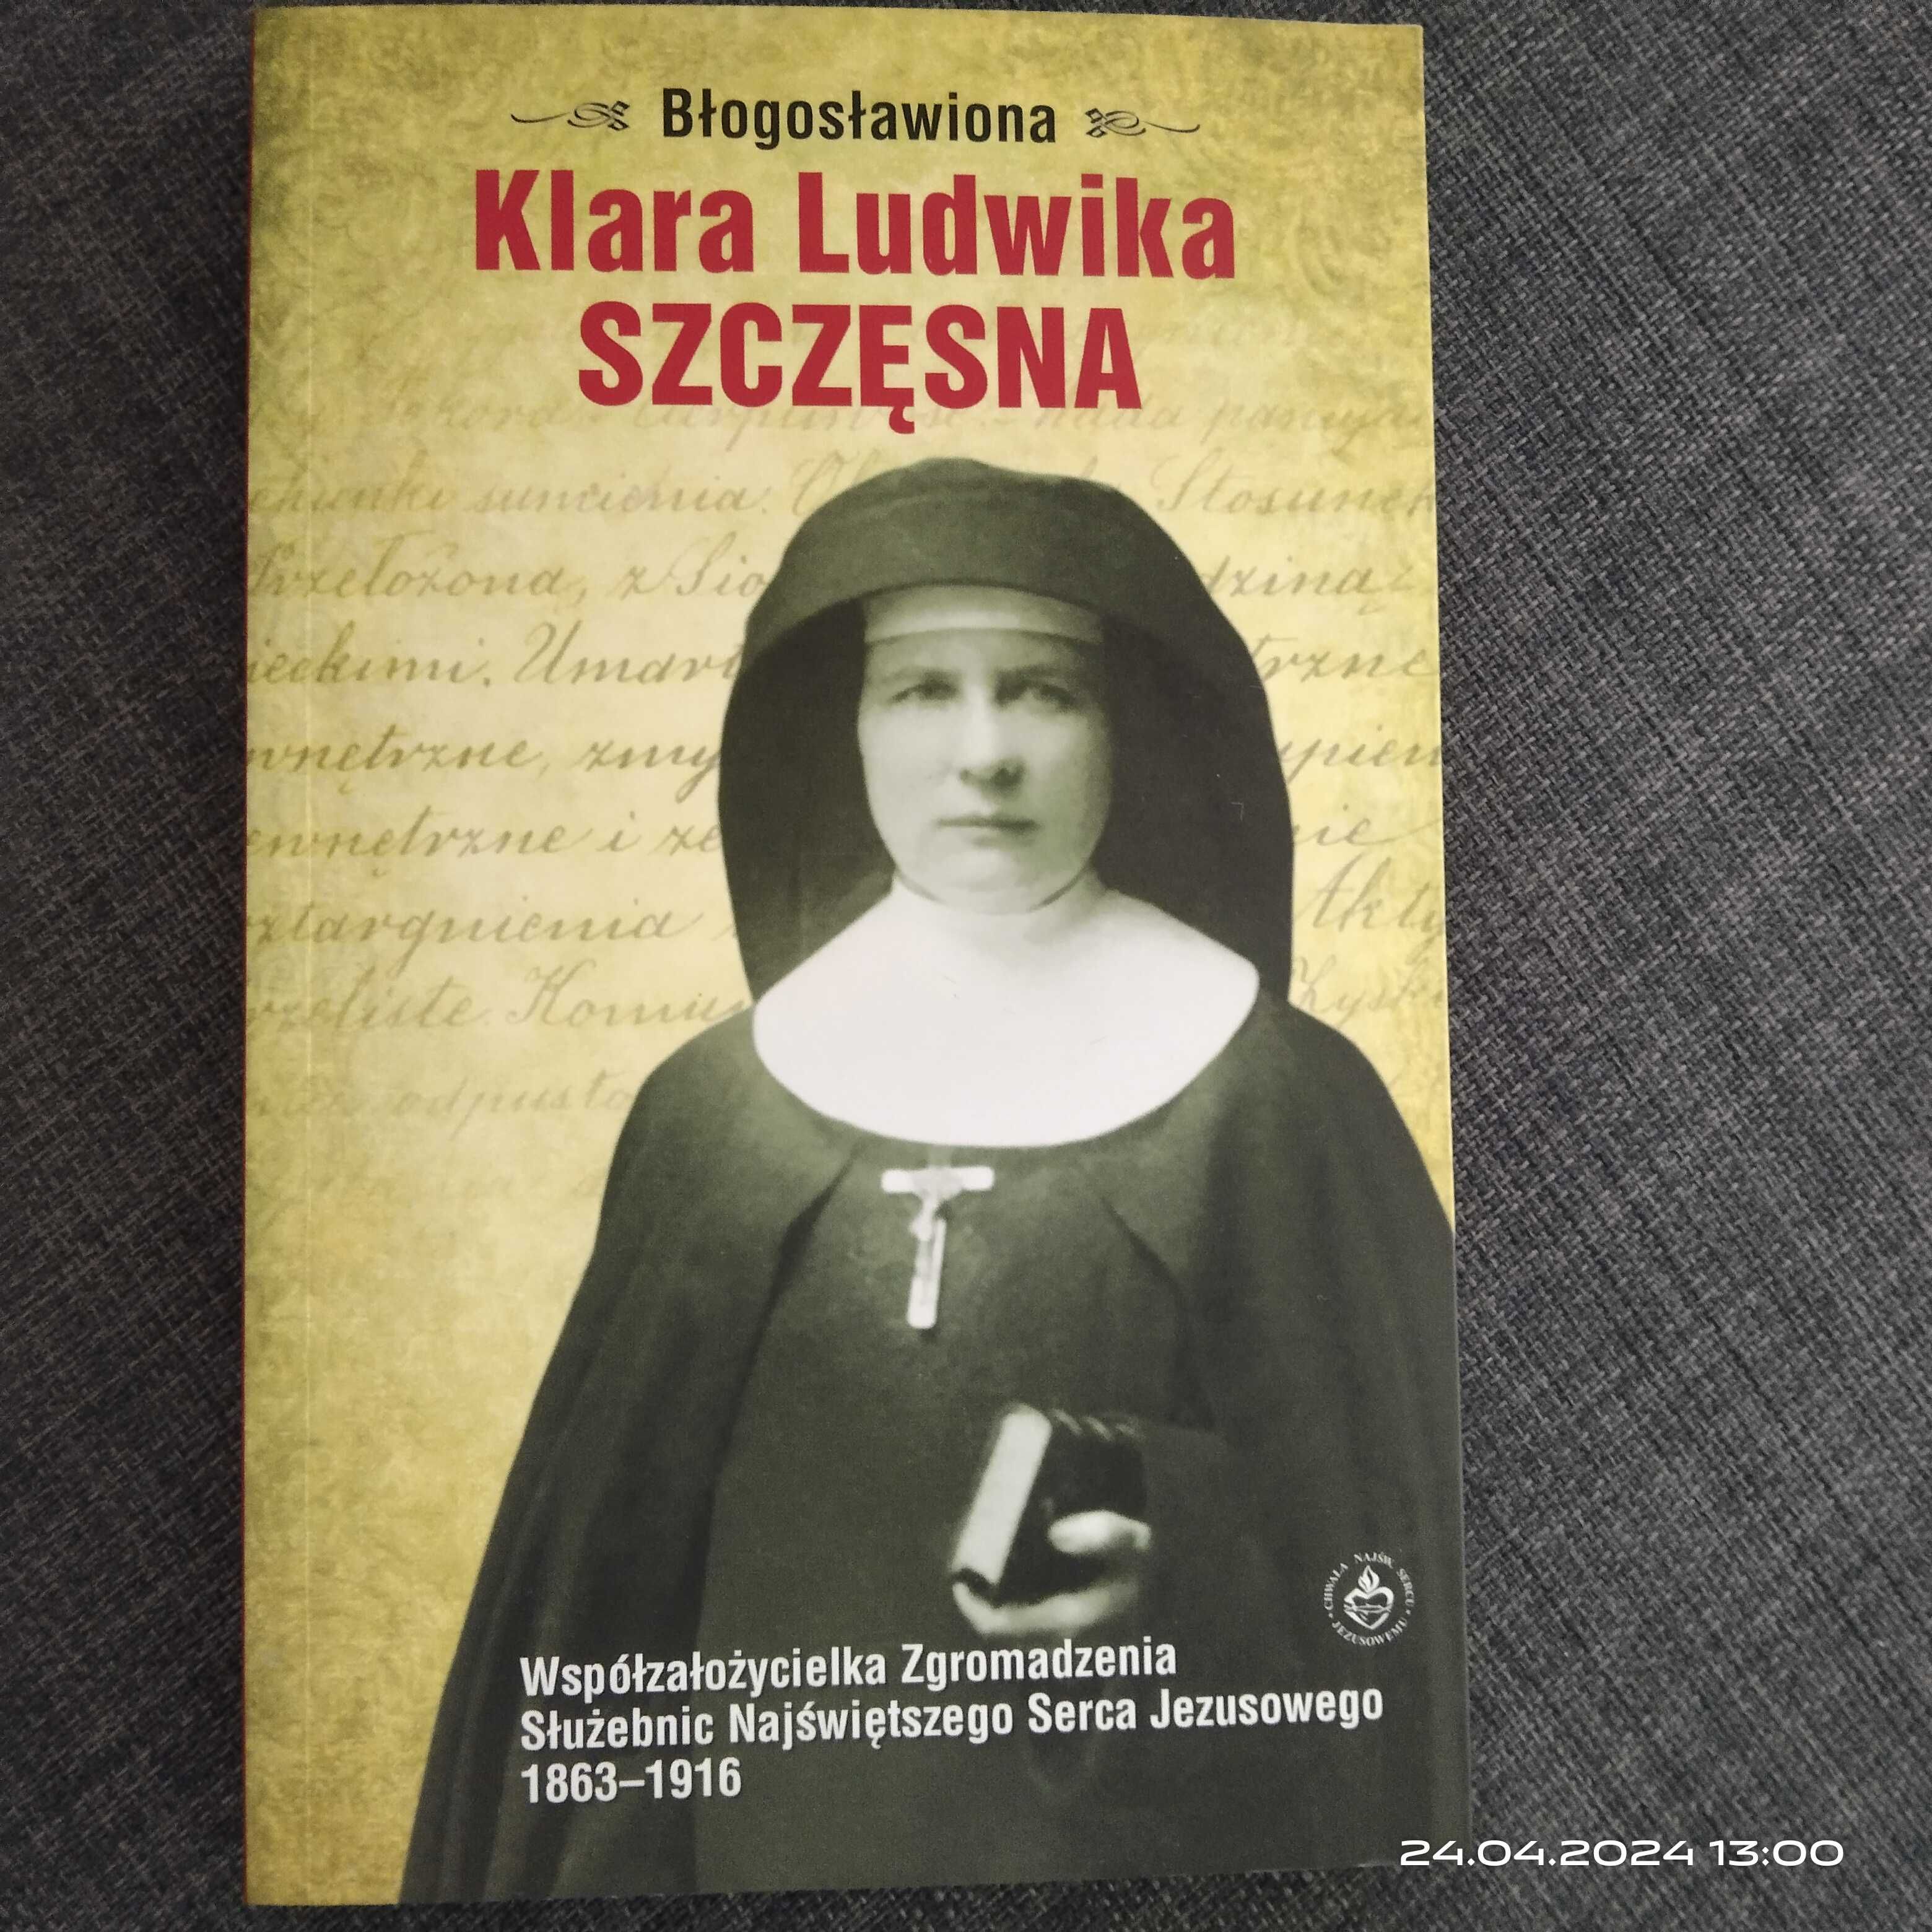 Książka "Błogosławiona Klara Ludwika Szczęsna"